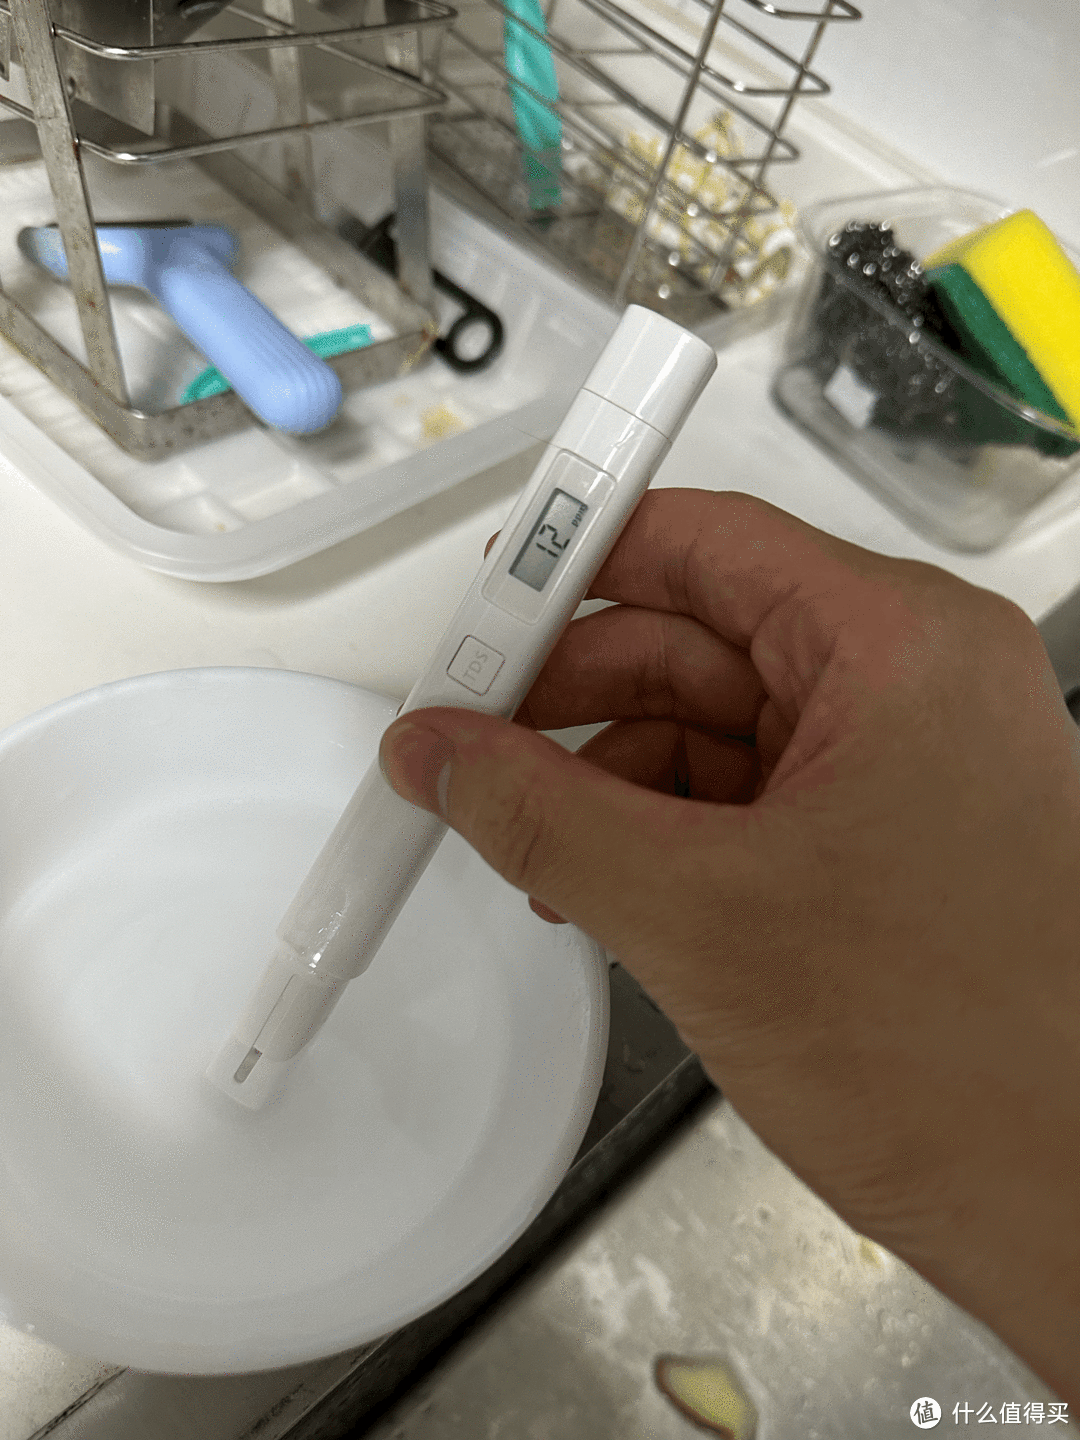 小米检测笔检测净水水质